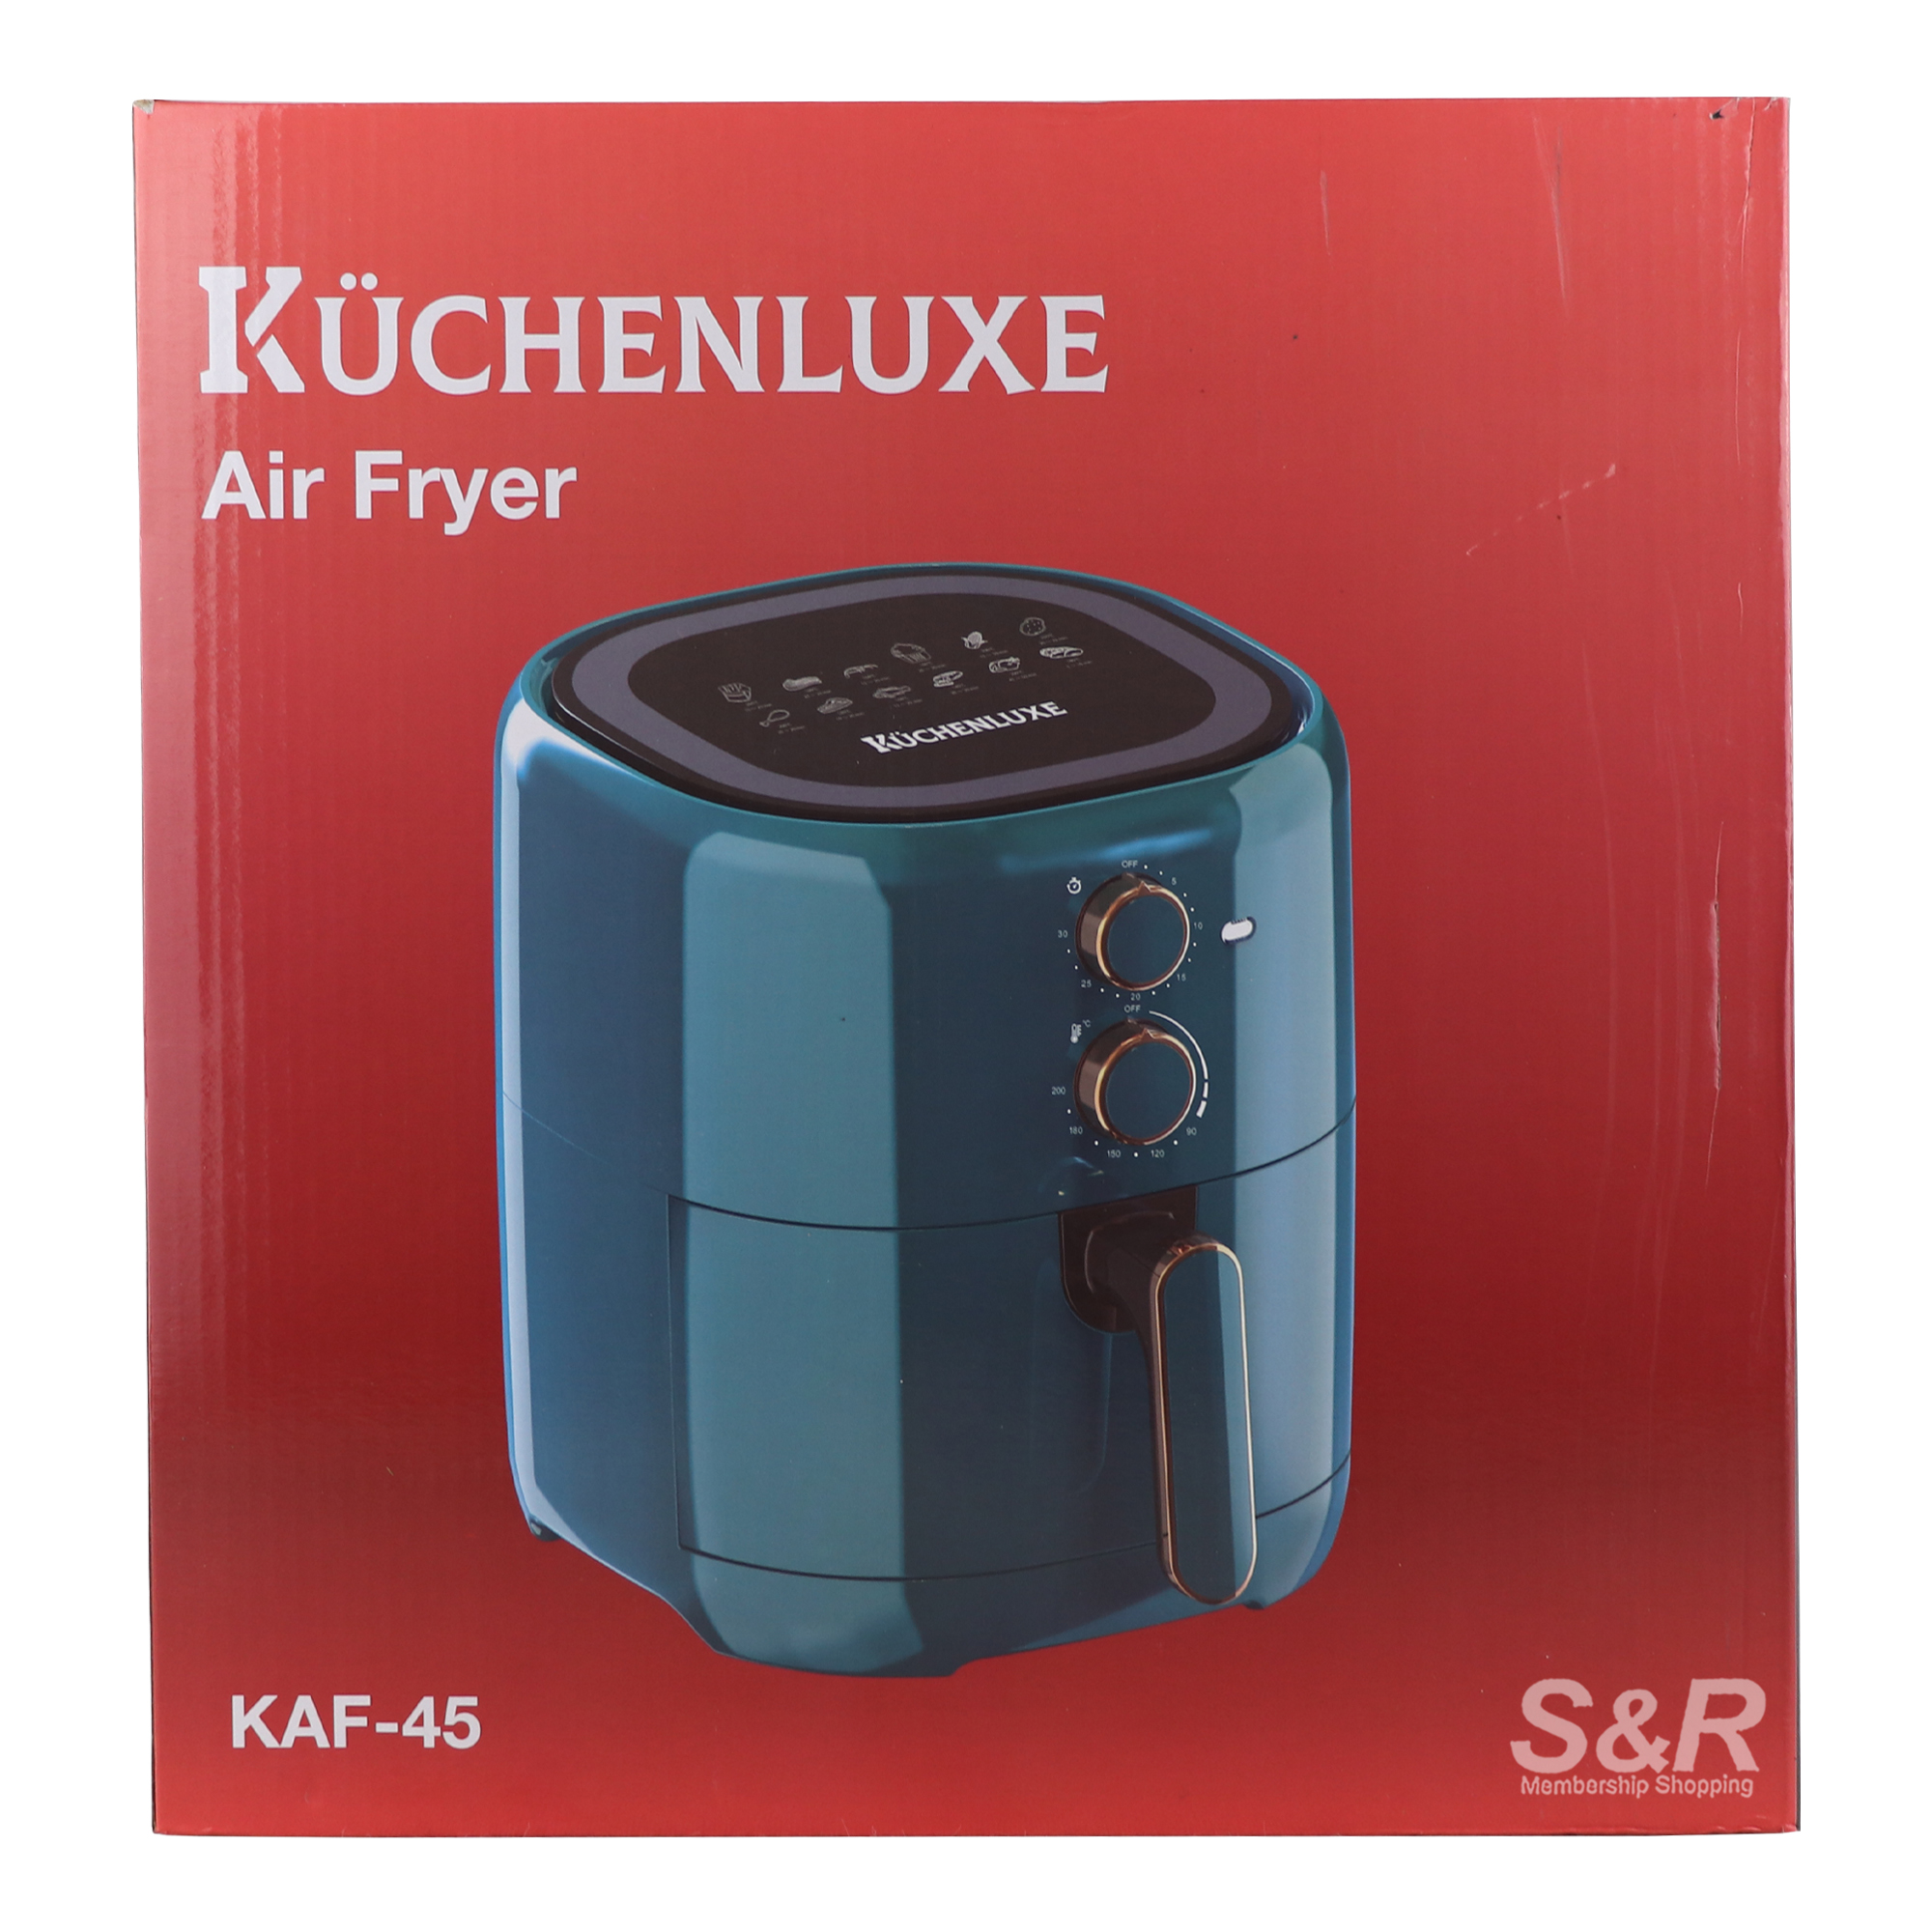 Kuchenluxe 4.5L Air Fryer KAF-45